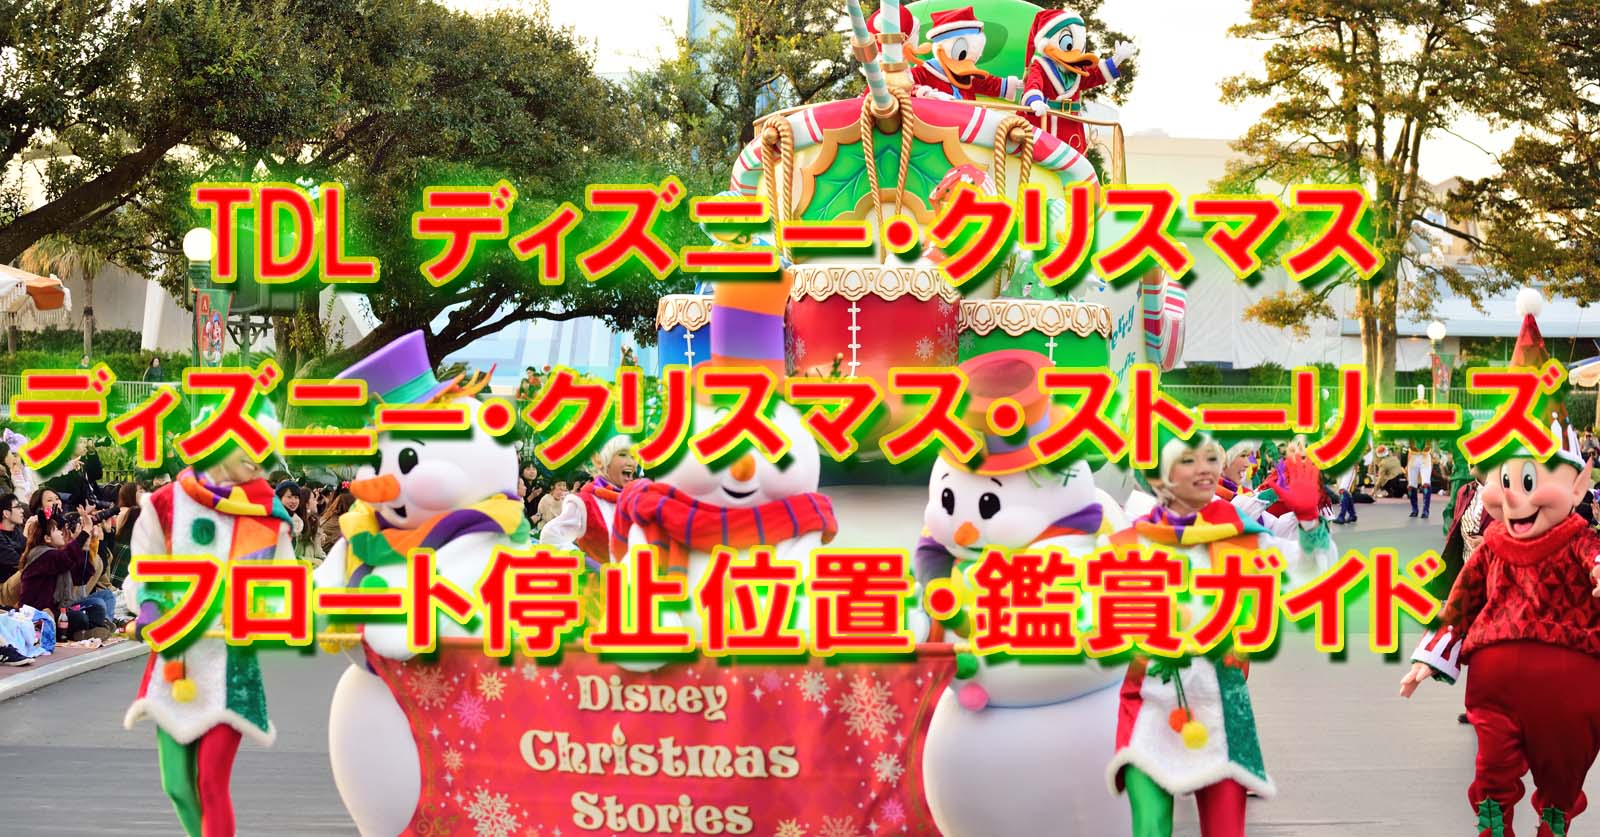 Tdl ディズニー クリスマス ストーリーズ19 フロート停止位置 鑑賞ガイド Disney Colors